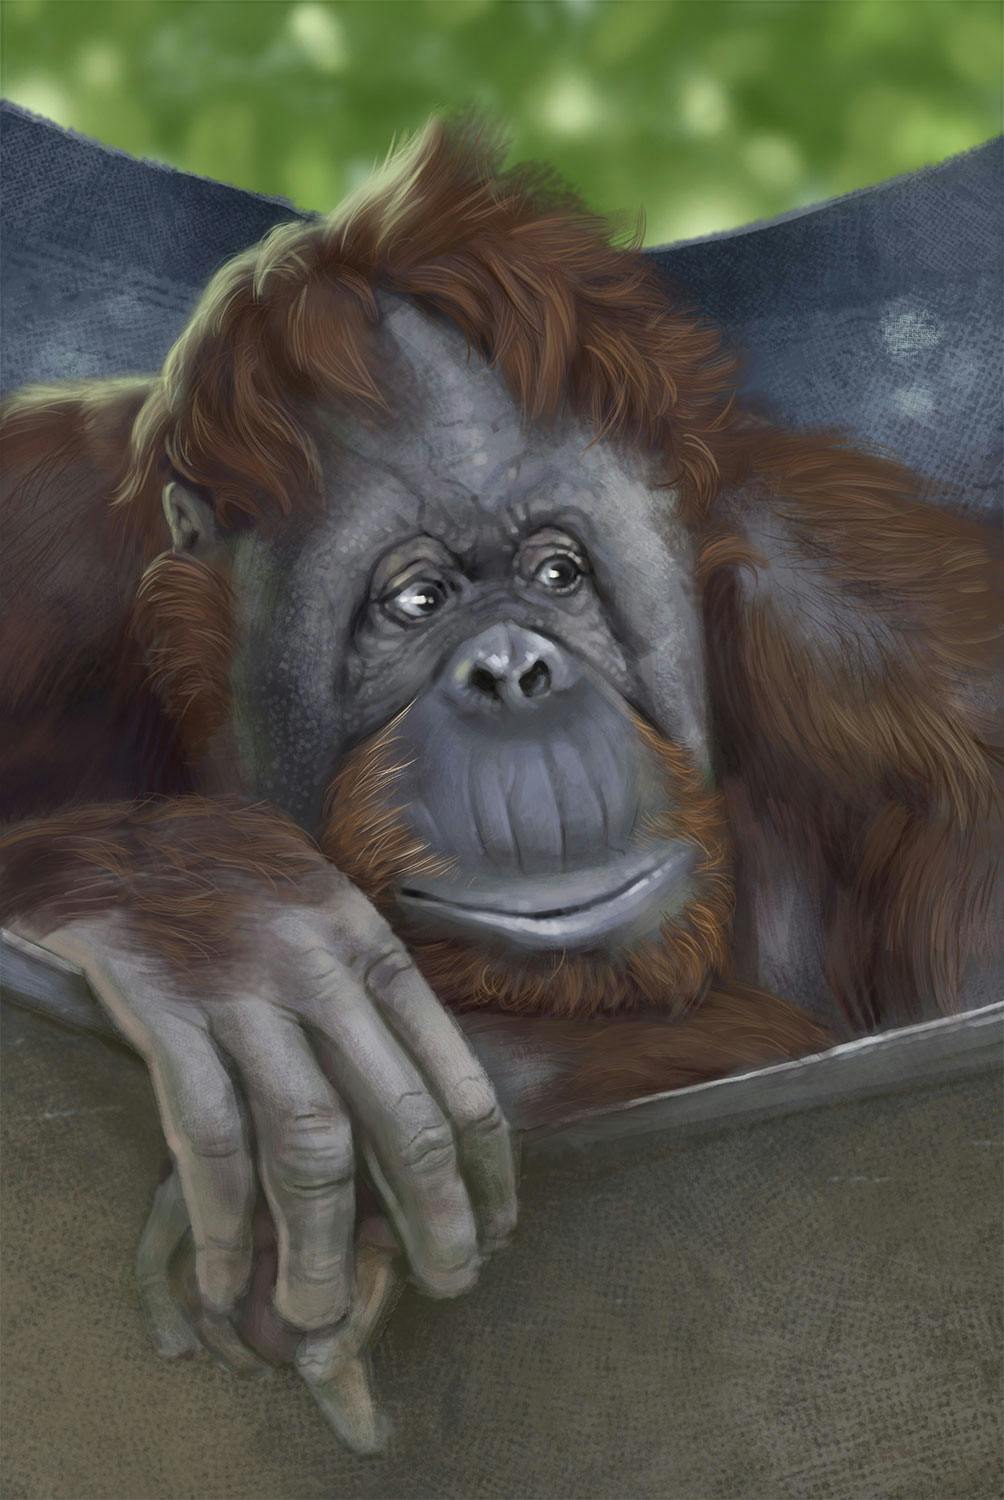 Portrait of an orangutan